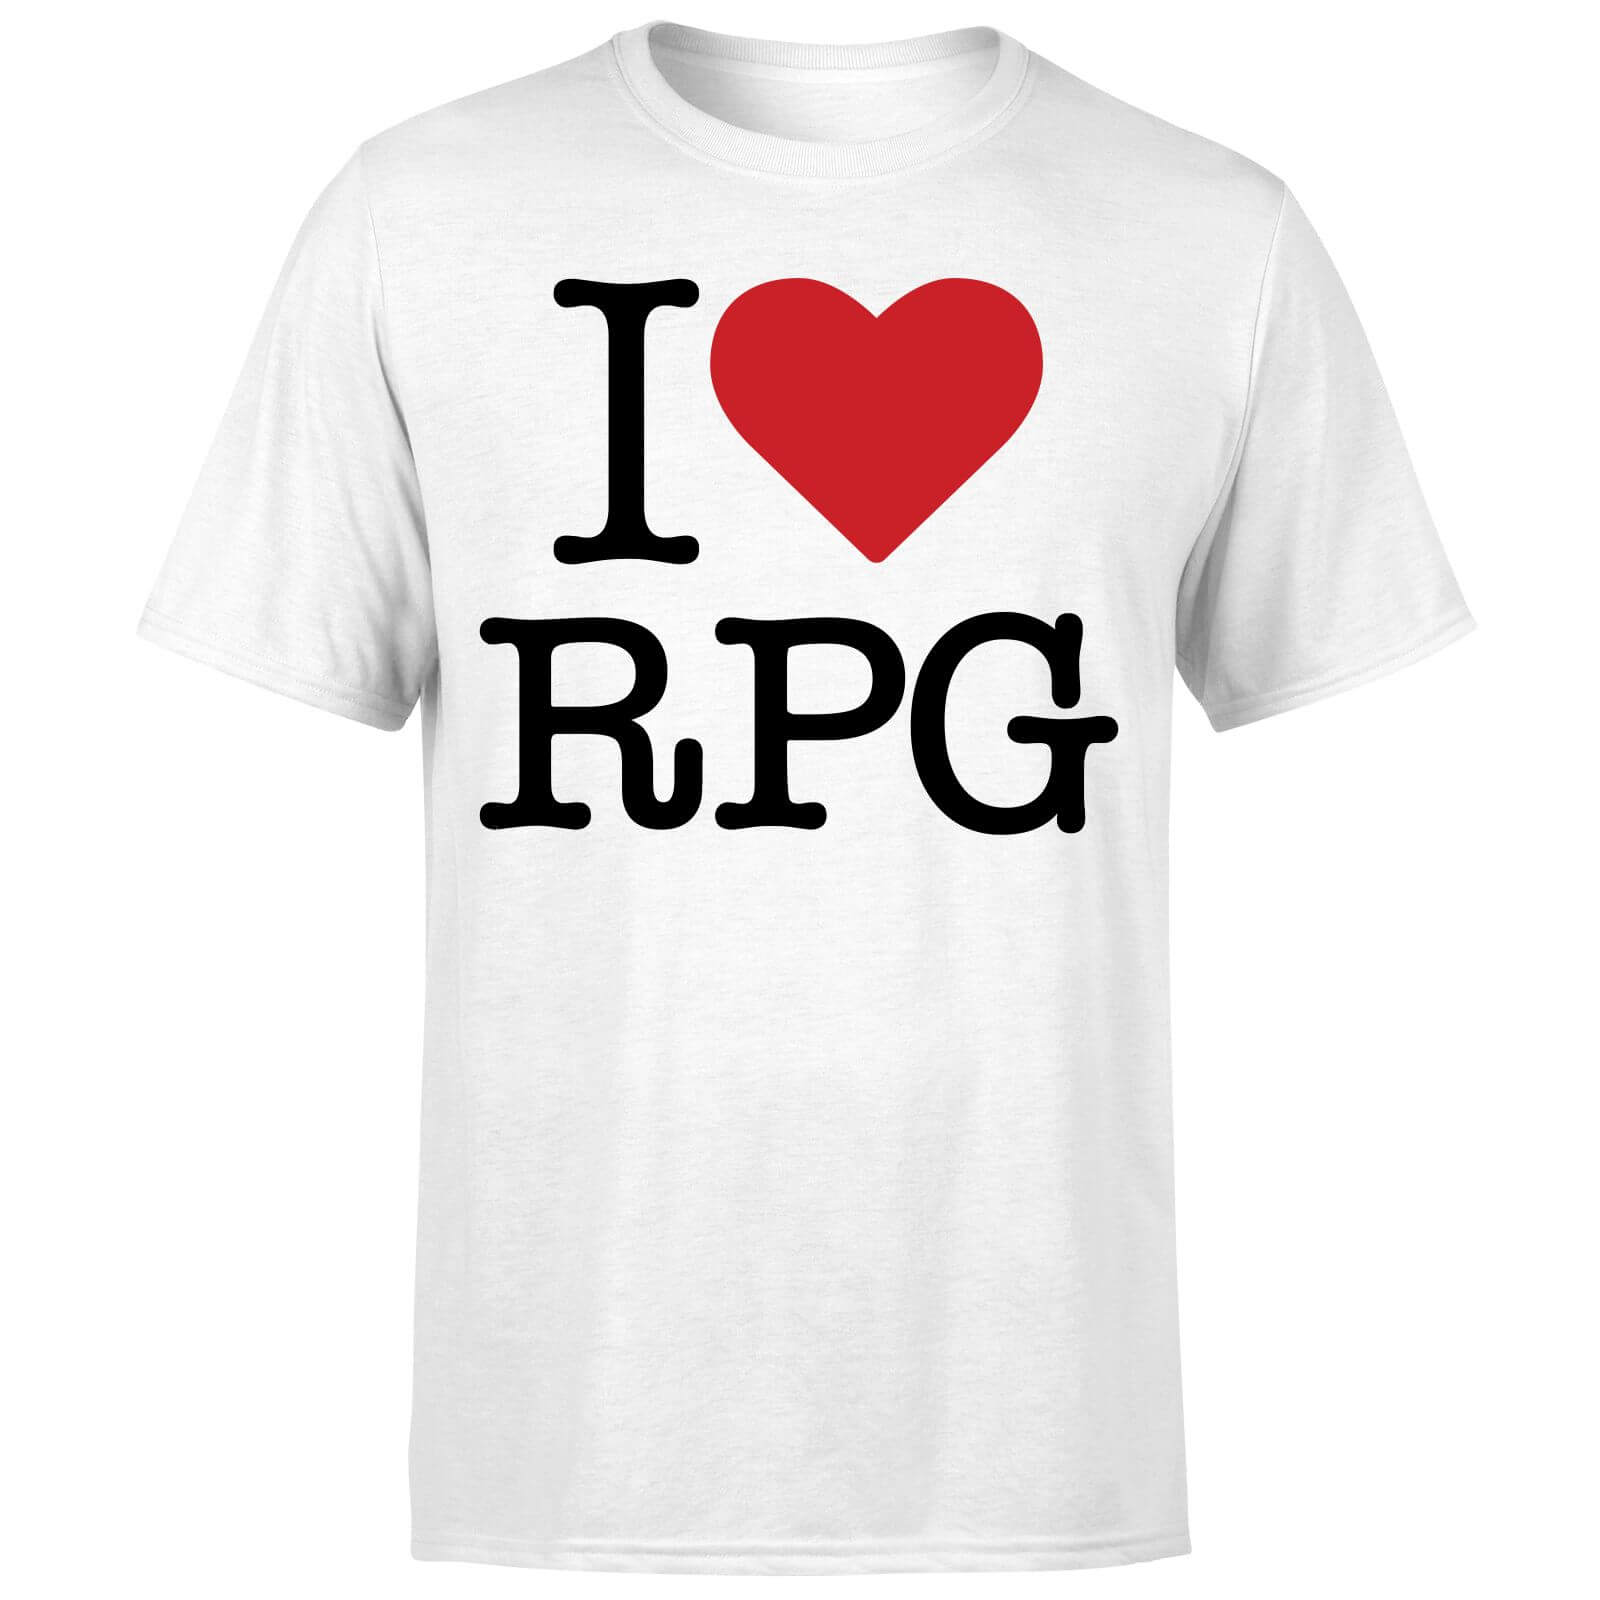 I Love RPG T-Shirt - White - S - White